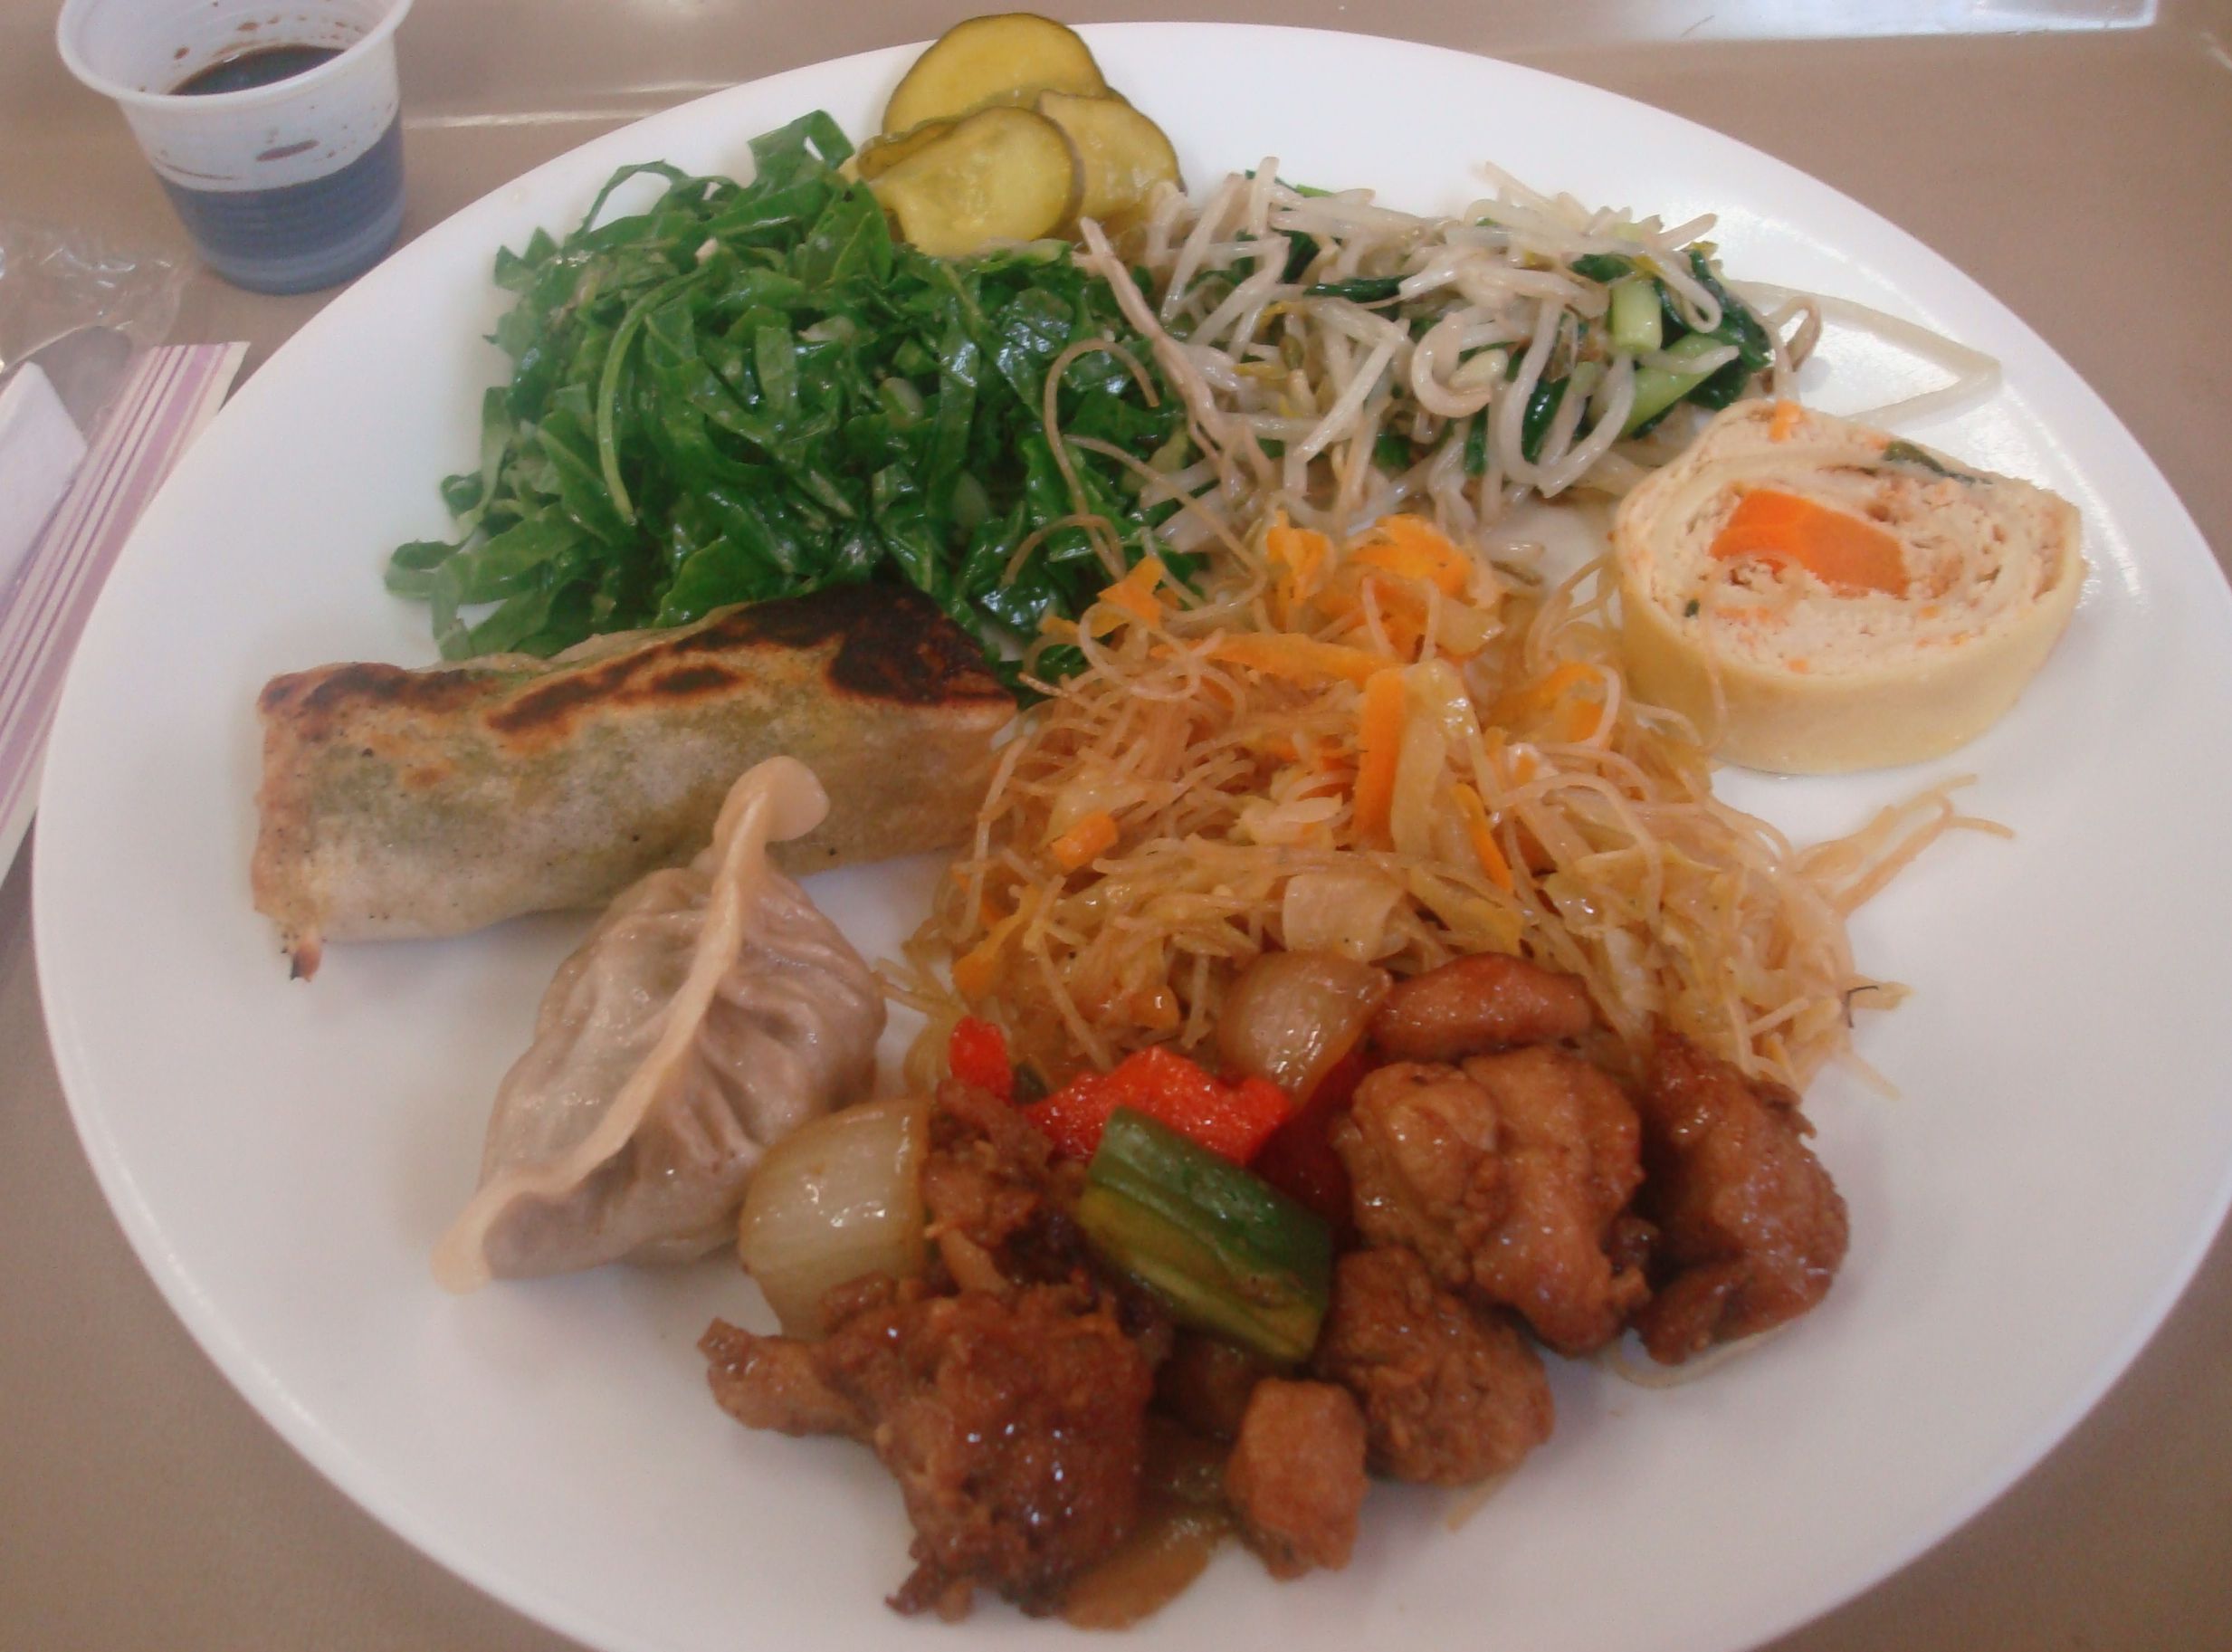 Aogobom - Comida chinesa - Onde Comer em Salvador - Restaurantes chineses - Bares e restaurantes em Salvador